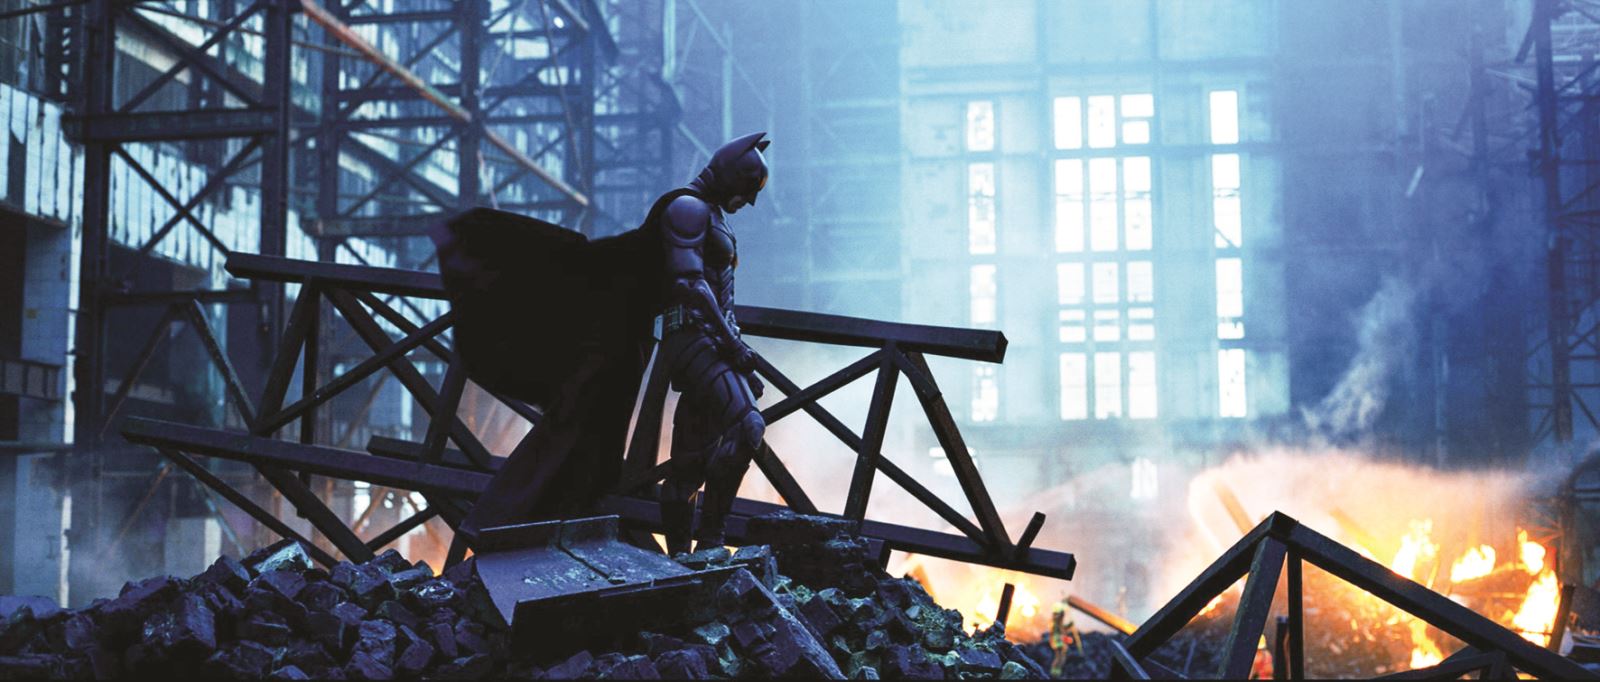 Bộ ba phim về Batman của đạo diễn Christopher Nolan, hay được gọi là The Dark Knight Trilogy là một trong những trilogy (bộ ba phim) hay nhất, được đánh giá cao, đề cử nhiều giải thưởng quan trọng và được coi là một trong những series phim xuất sắc nhất mọi thời đại. Cuối năm nay, loạt phim siêu anh hùng nổi tiếng trong lịch sử điện ảnh thế giới này sẽ quay trở lại màn ảnh rộng với cả ba phần phim.